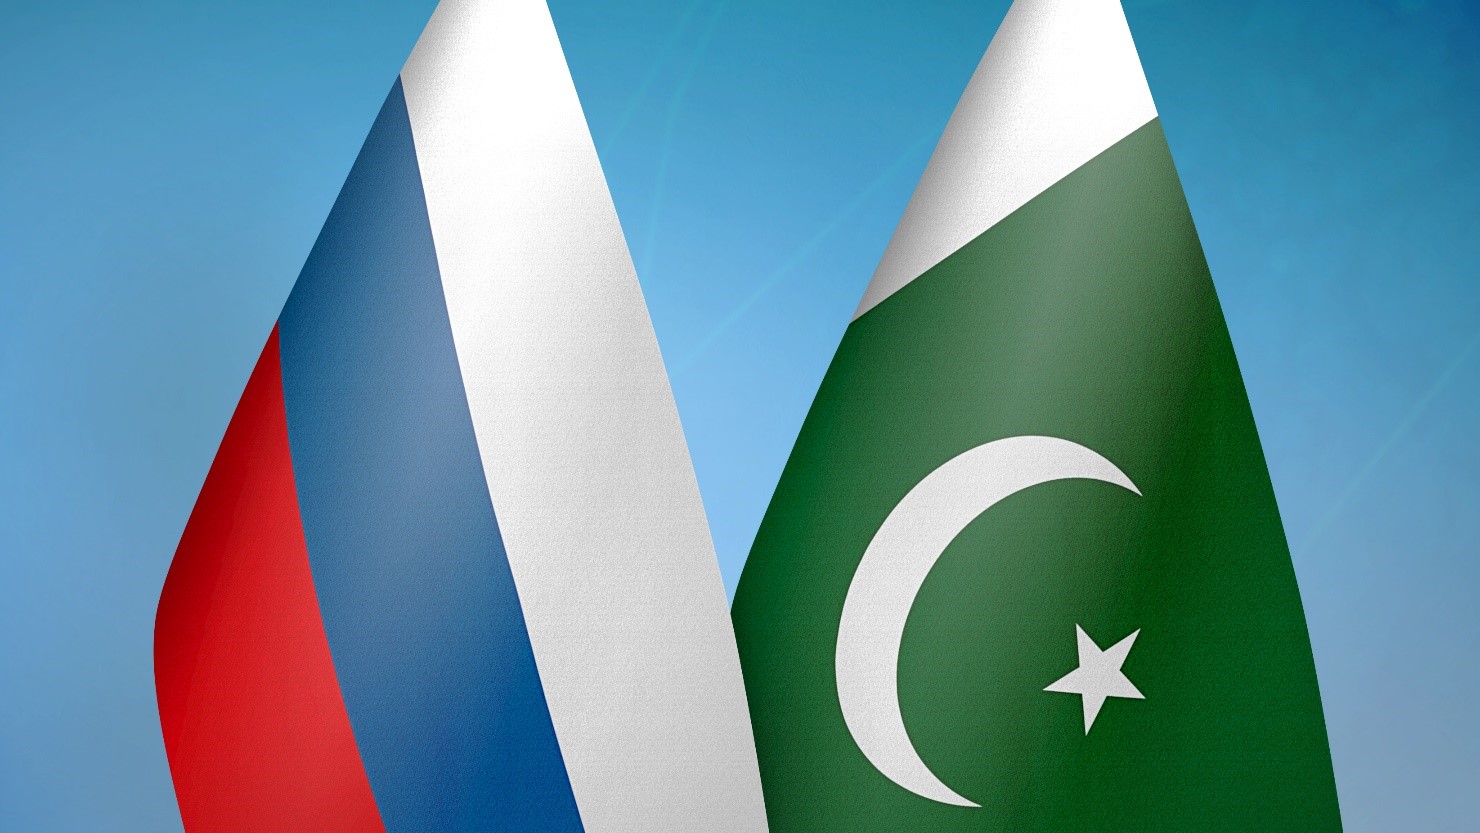 Национальные комитеты МИРЭС в России и Пакистане договорились о развитии взаимодействия